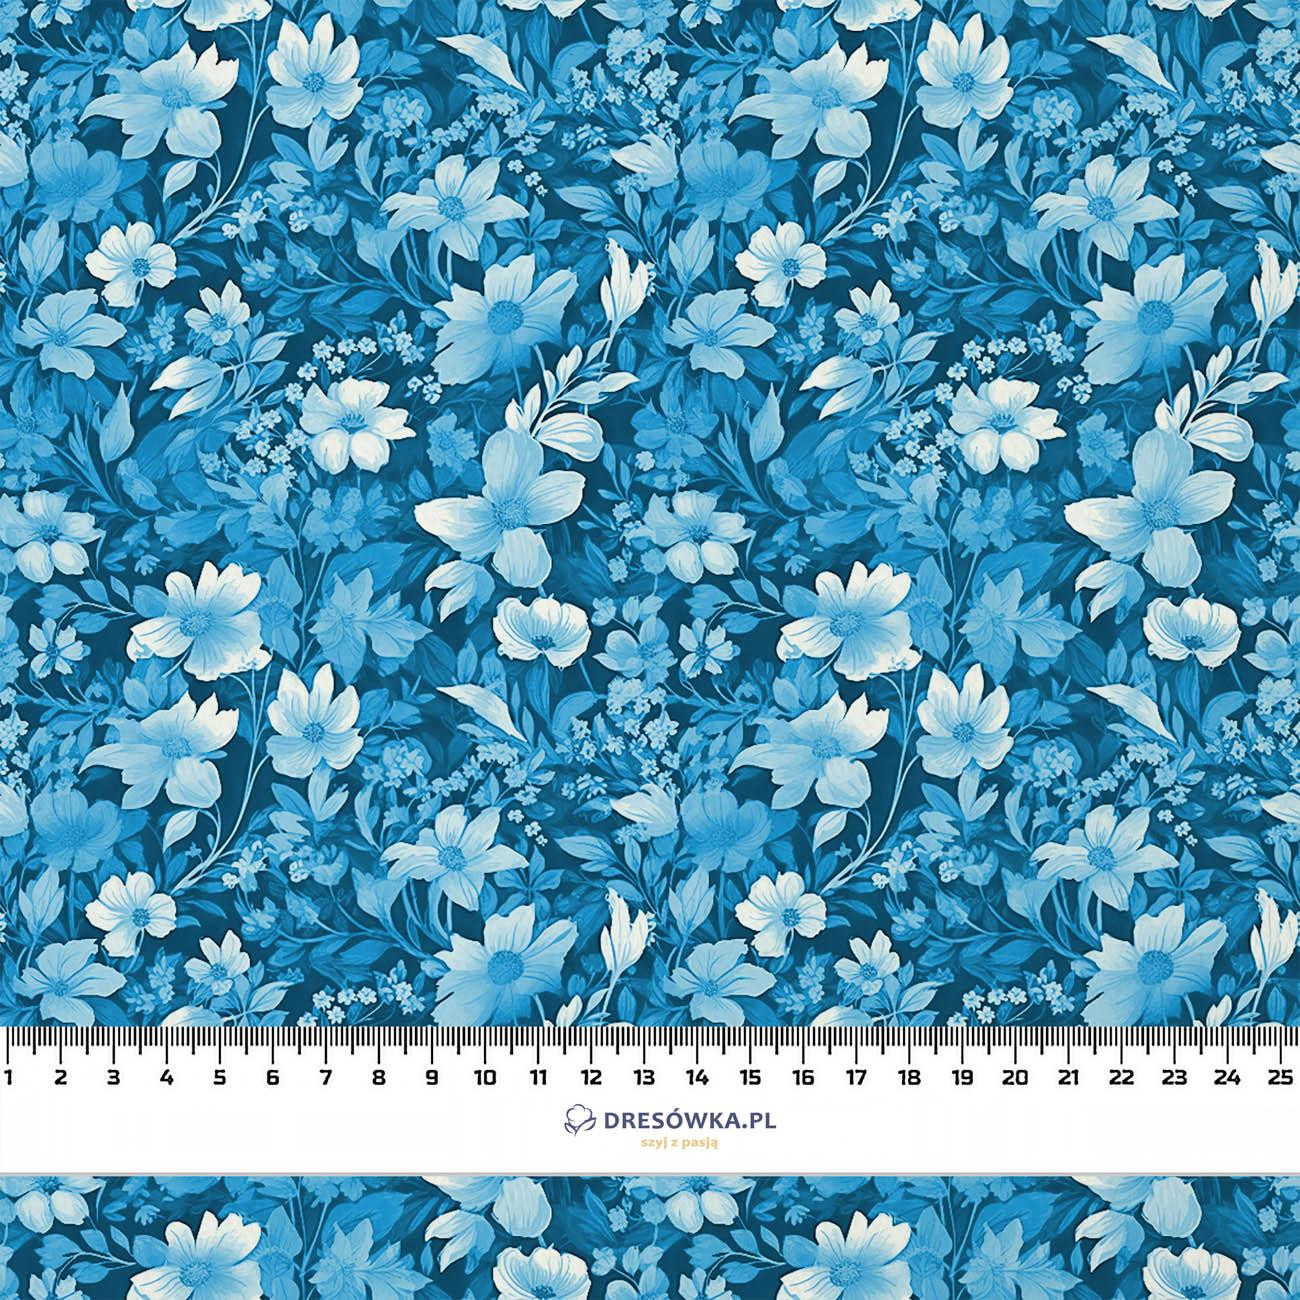 TRANQUIL BLUE / FLOWERS - Linen 100%